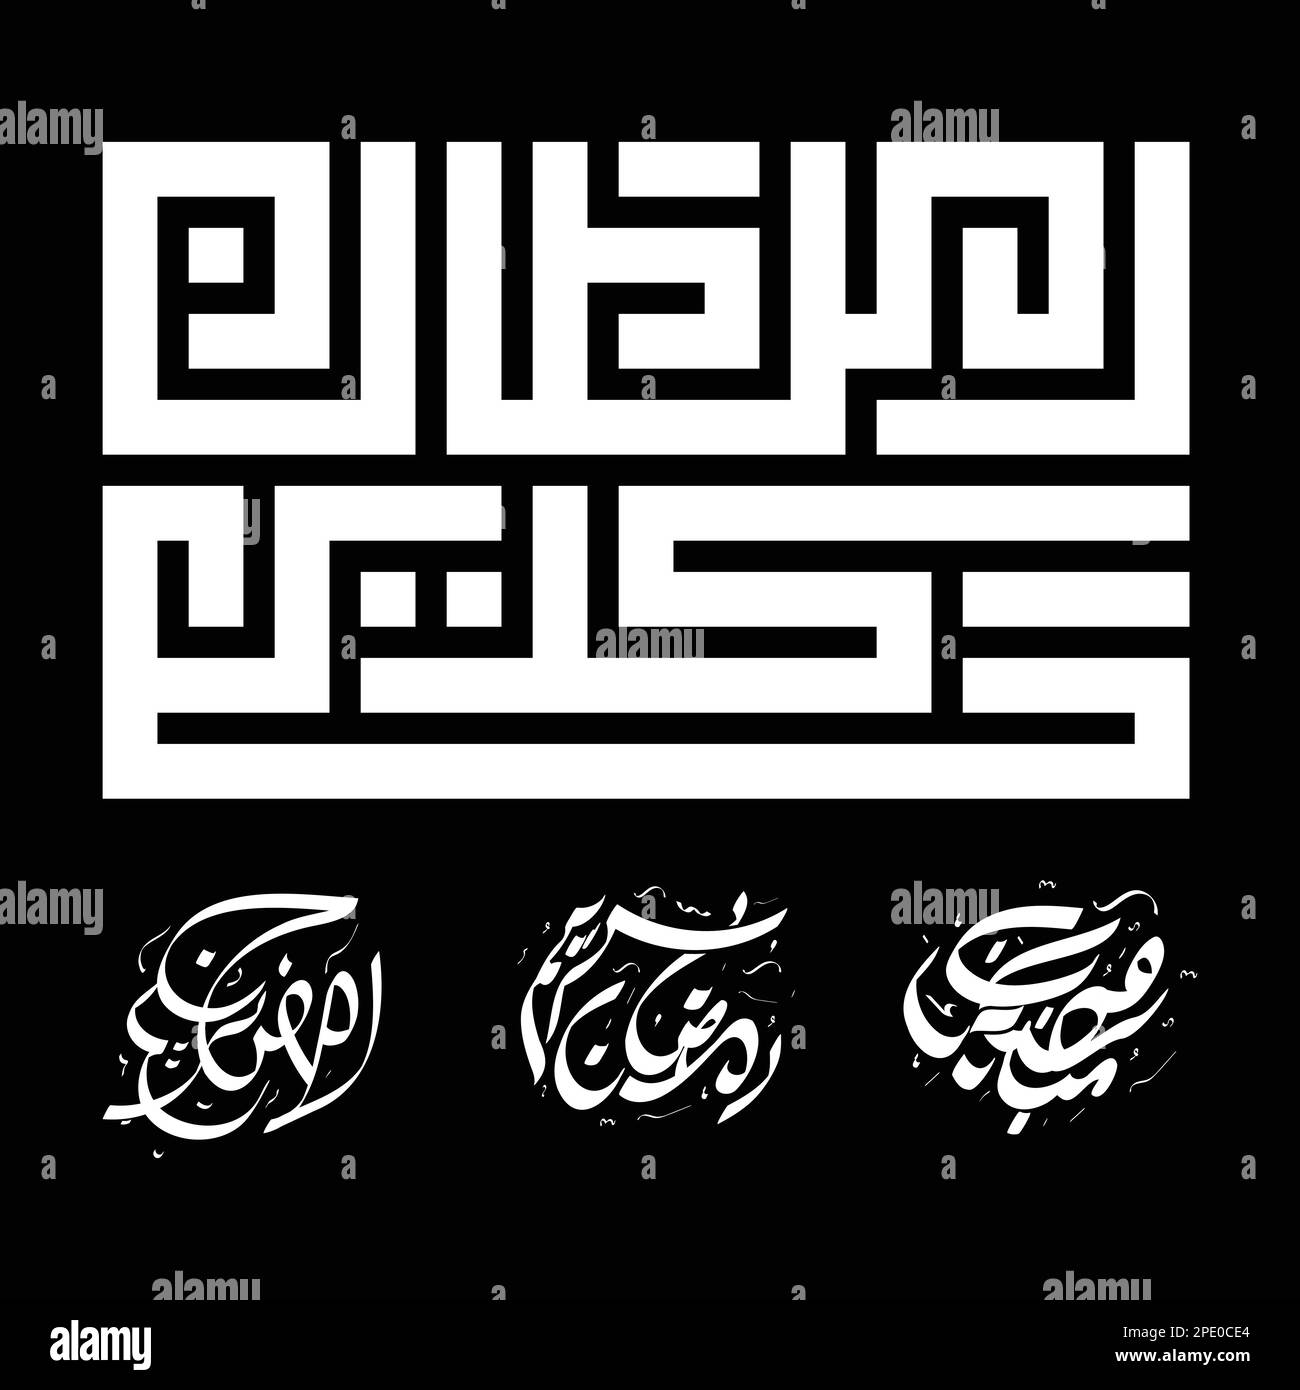 Ramadan Mubarak in arabic calligraphy design element vector illustration ramadam kareem design template Stock Vector